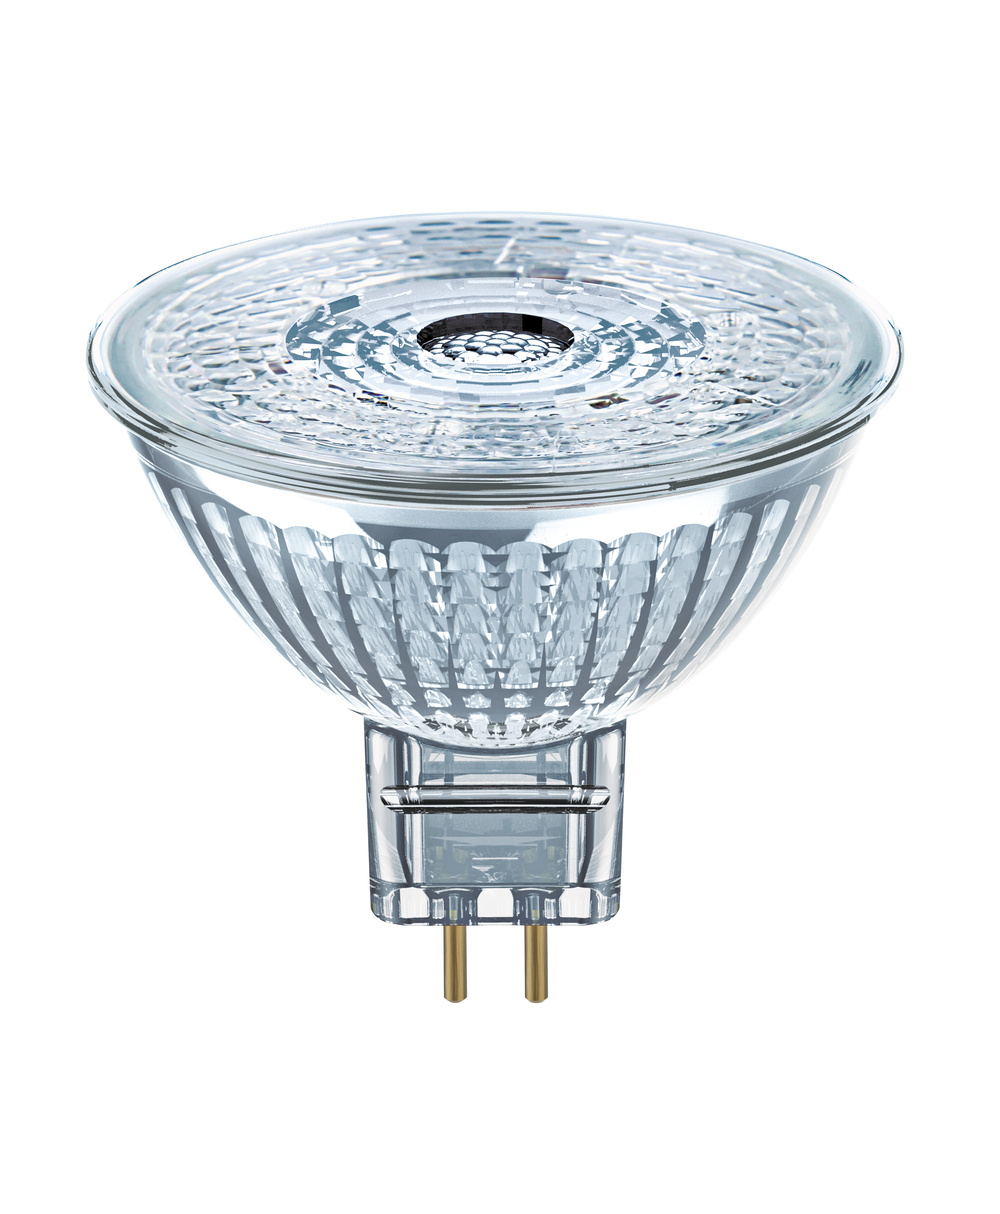 Ledvance LED lamp PARATHOM DIM MR16 35 36 °  4.9 W/3000 K GU5.3  - 4058075431478